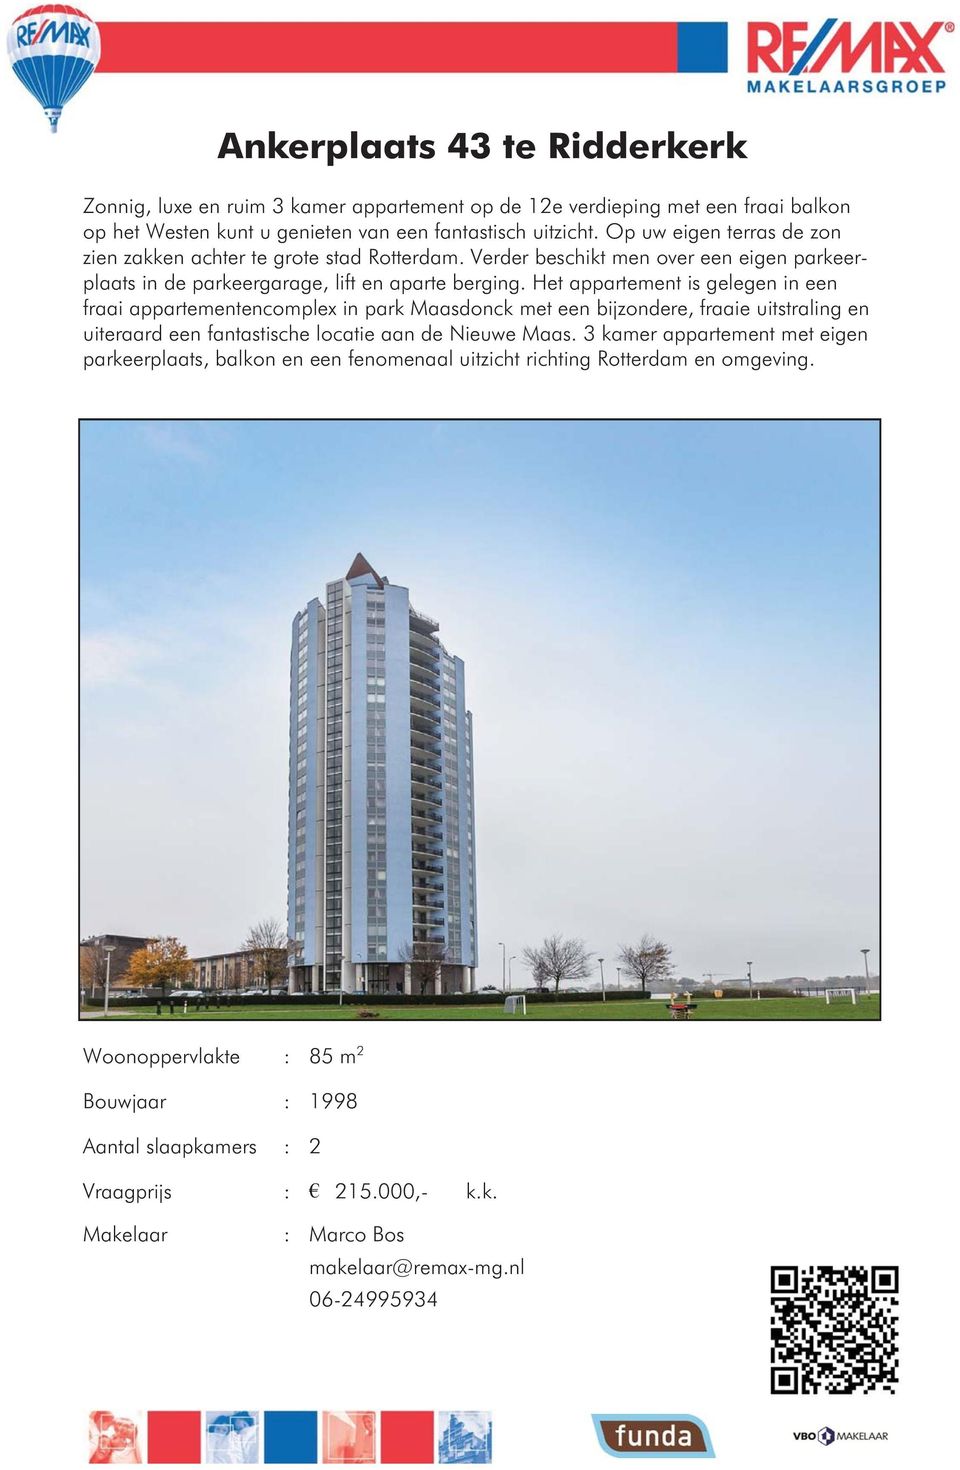 Het appartement is gelegen in een fraai appartementencomplex in park Maasdonck met een bijzondere, fraaie uitstraling en uiteraard een fantastische locatie aan de Nieuwe Maas.